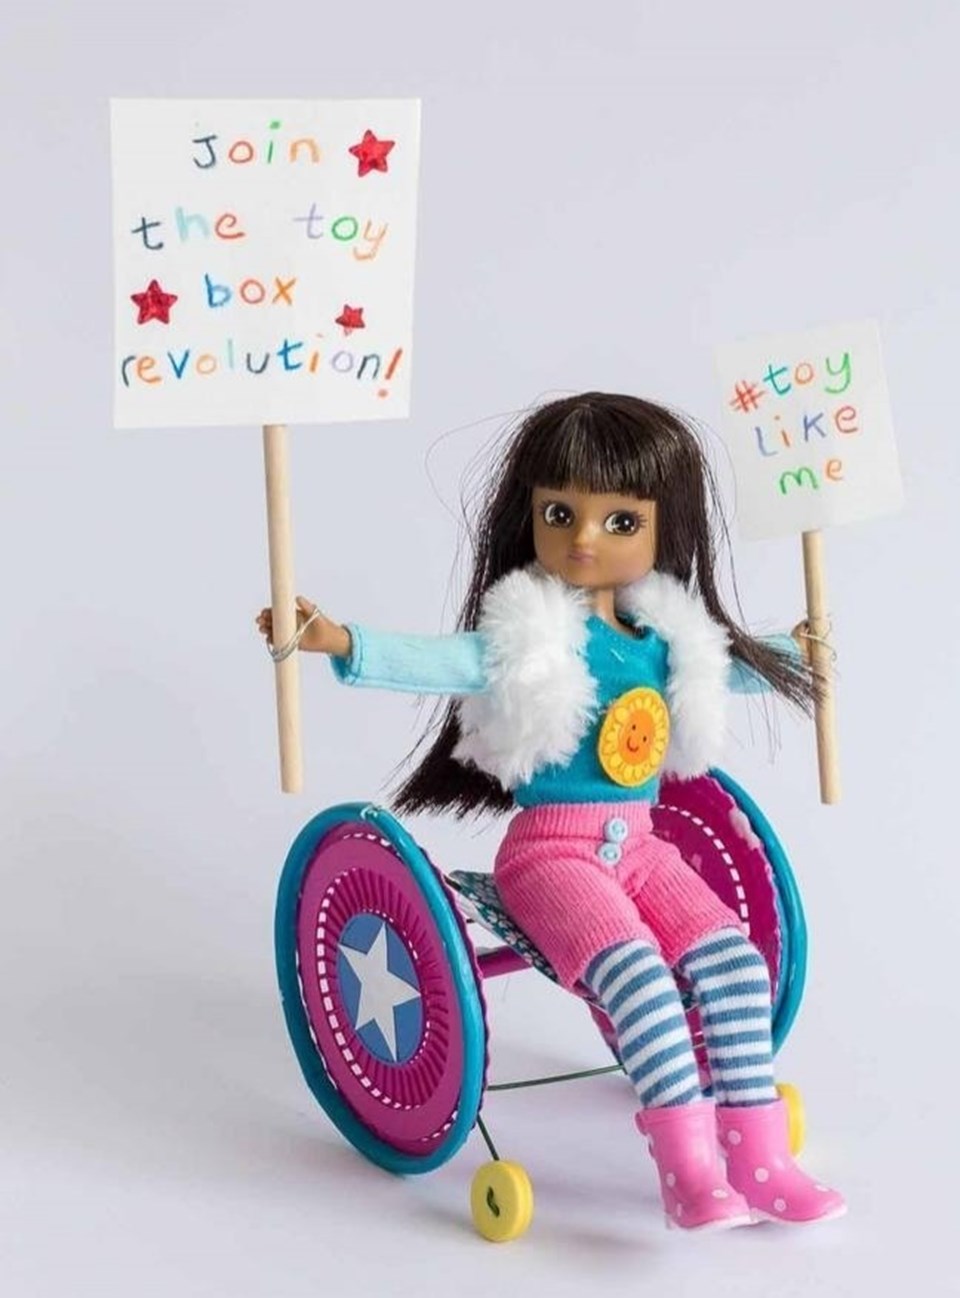 Engelli çocuklar için oyuncak yaptı - 2